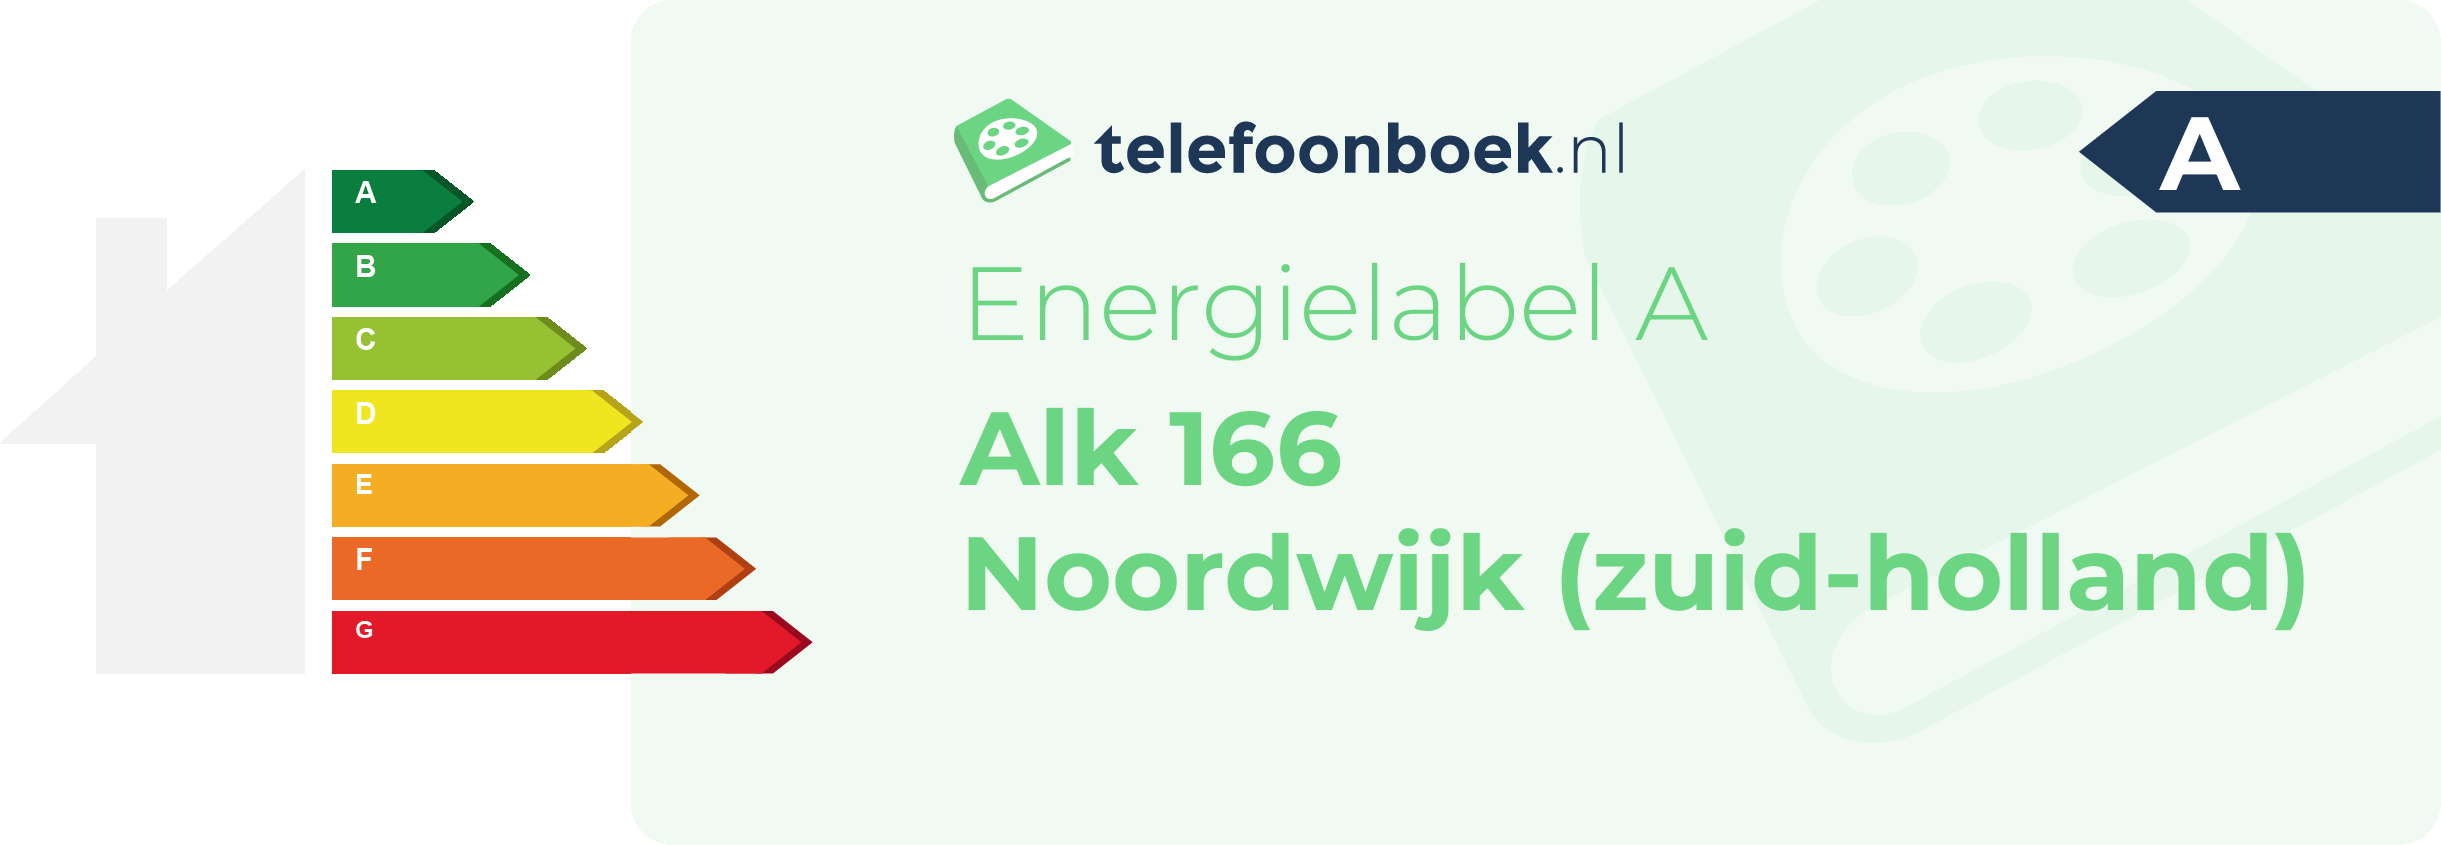 Energielabel Alk 166 Noordwijk (Zuid-Holland)